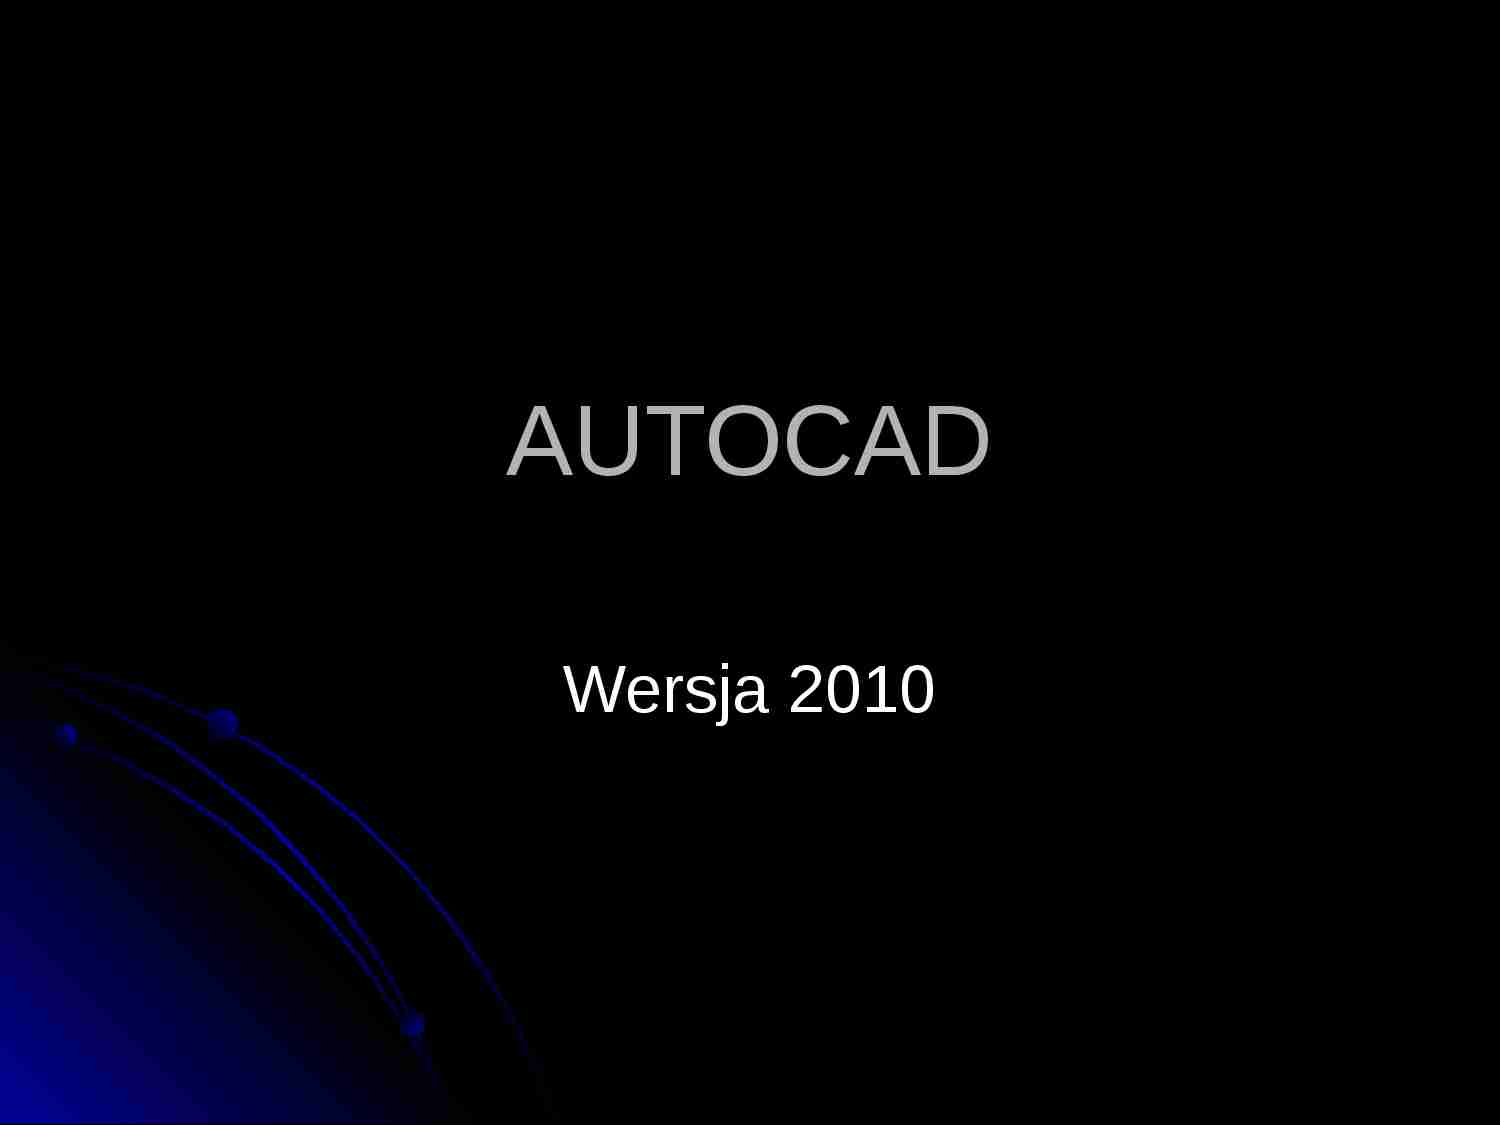 AUTOCAD - wersja 2010 - prezentacja - strona 1